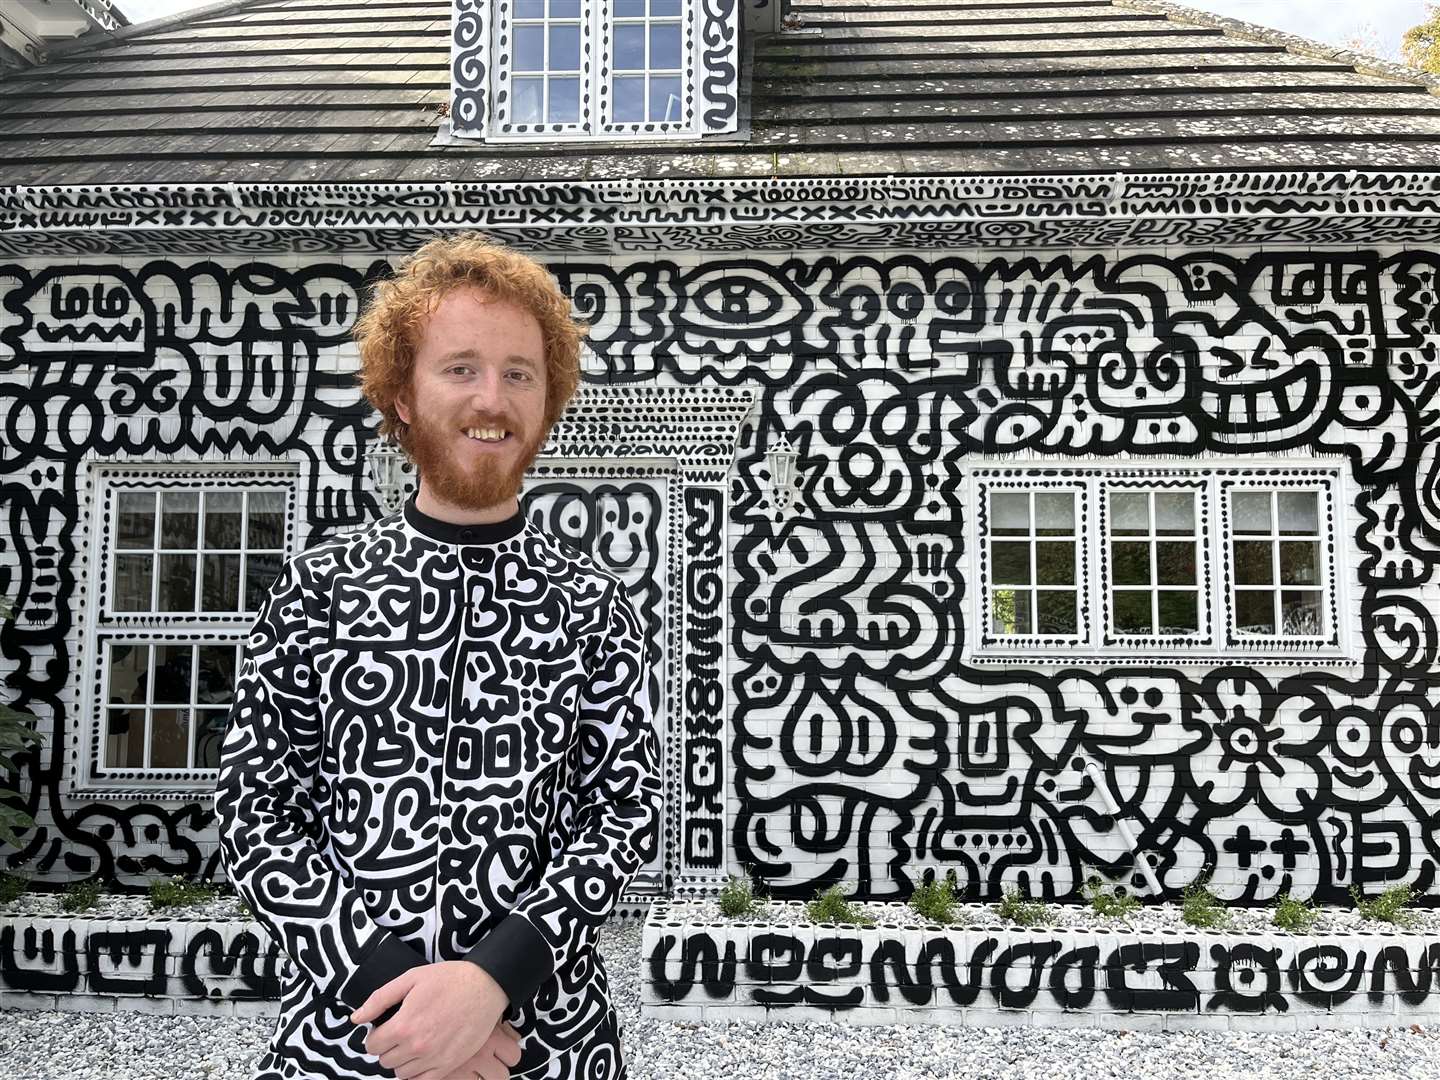 Mr Doodle has opened the doors of his doodled home in Tenterden